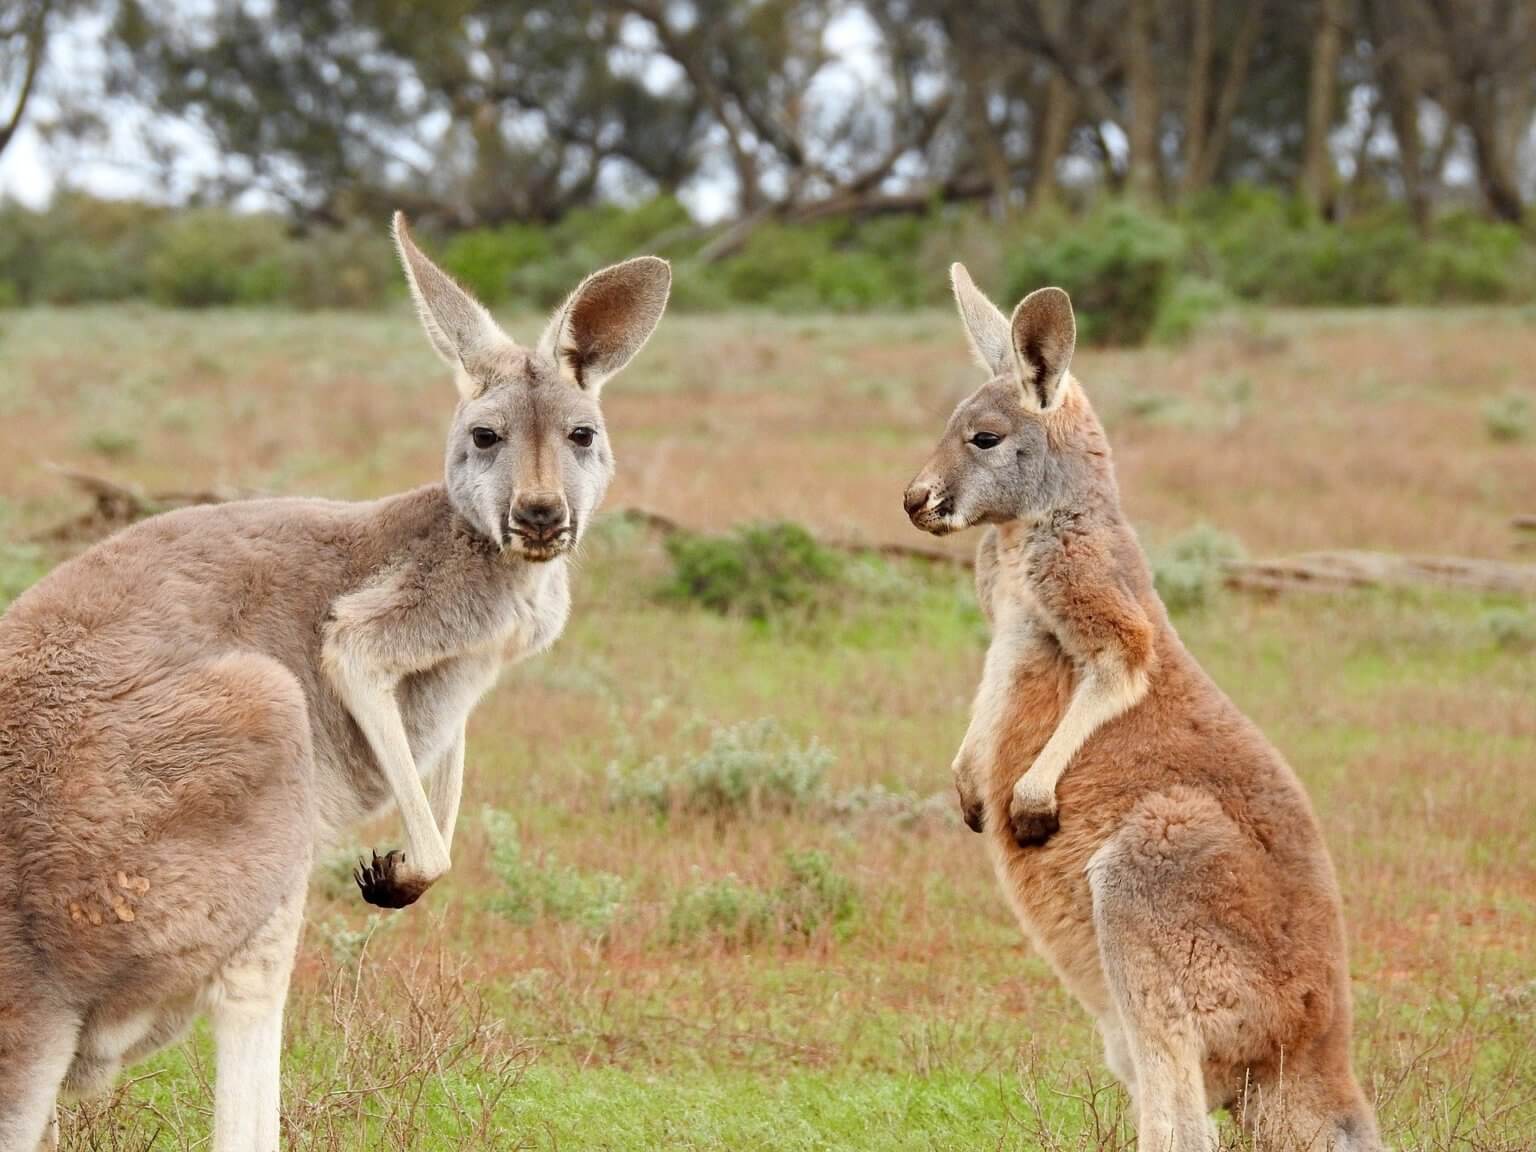 Bonne nouvelle : Paul Smith ne vendra plus de peau de kangourou